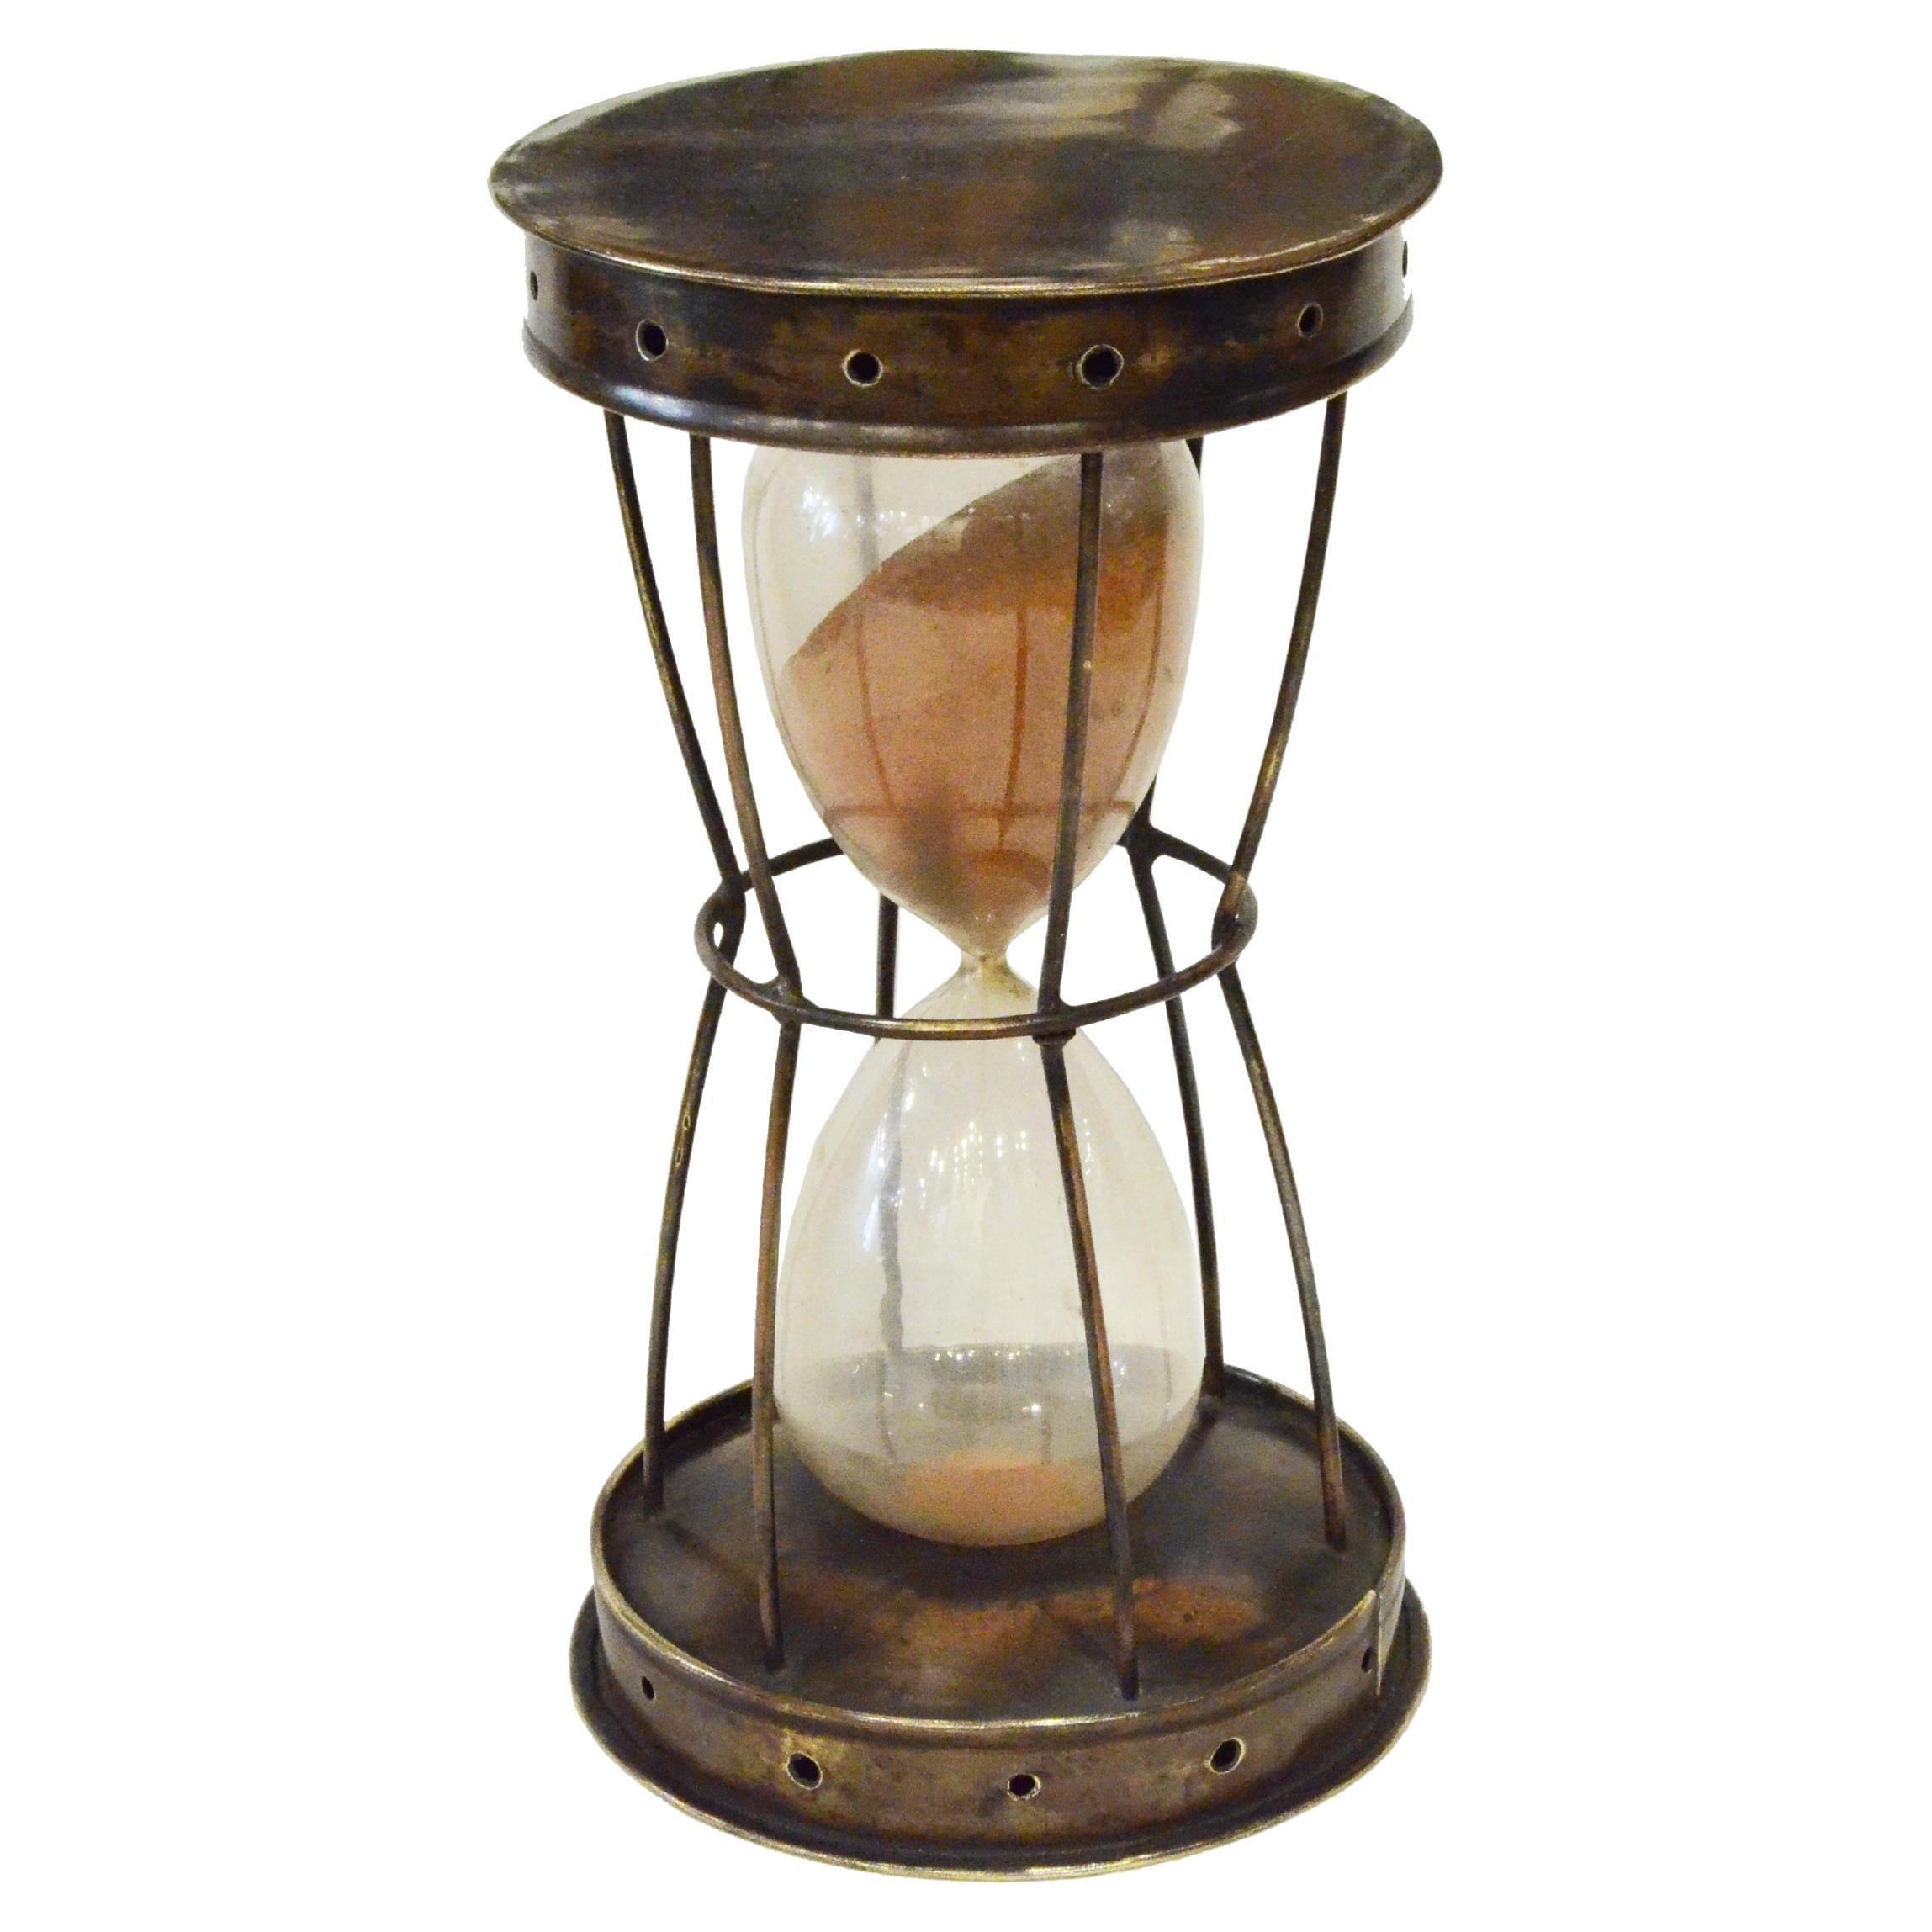 Fin XIXème siècle, sablier en laiton et verre, instrument de mesure du temps antique